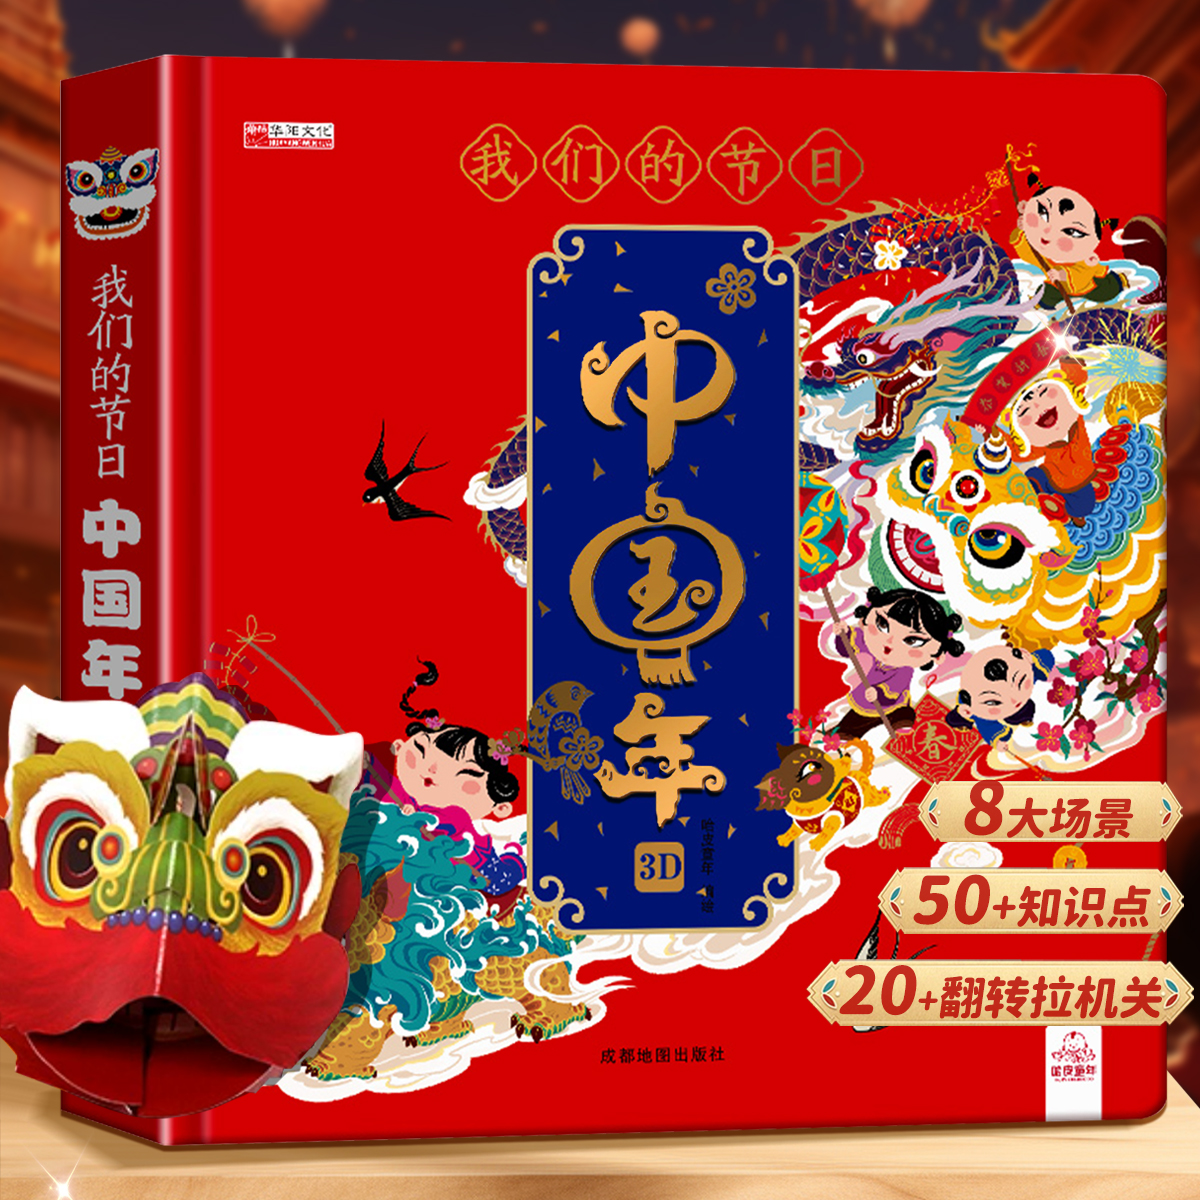 【DIY材料包】我们的节日中国年3D立体书 欢欢喜喜过新年龙年欢声笑语儿童3d立体书机关欢乐这就是我们的中国过年啦翻翻过大年春节